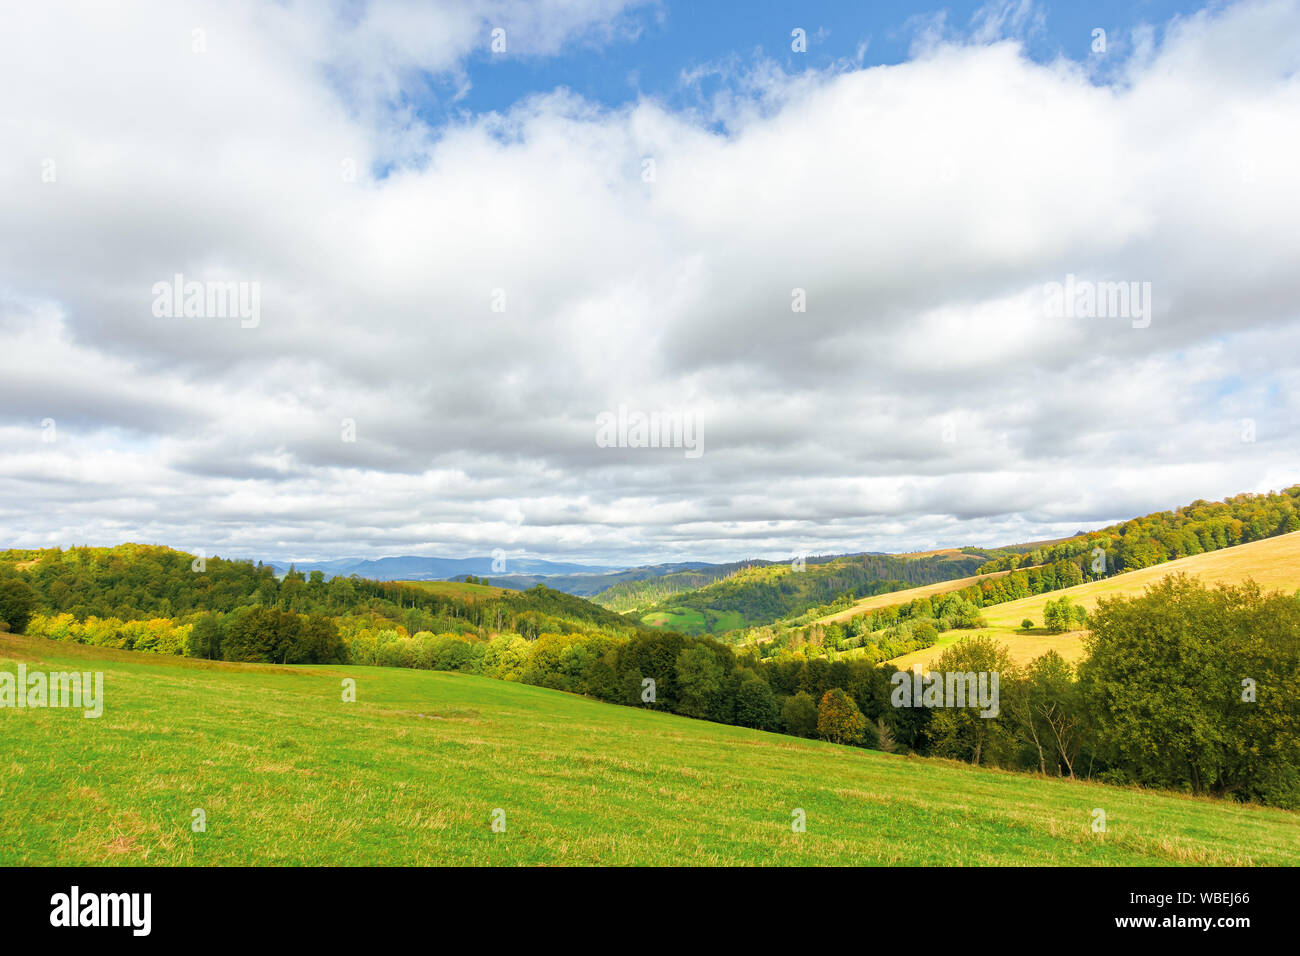 Die schöne Landschaft in Berg. Bäume auf grasbewachsenen Hügeln. sonnigen September wetter mit bewölktem Himmel. Wunderbare Natur Hintergrund Stockfoto